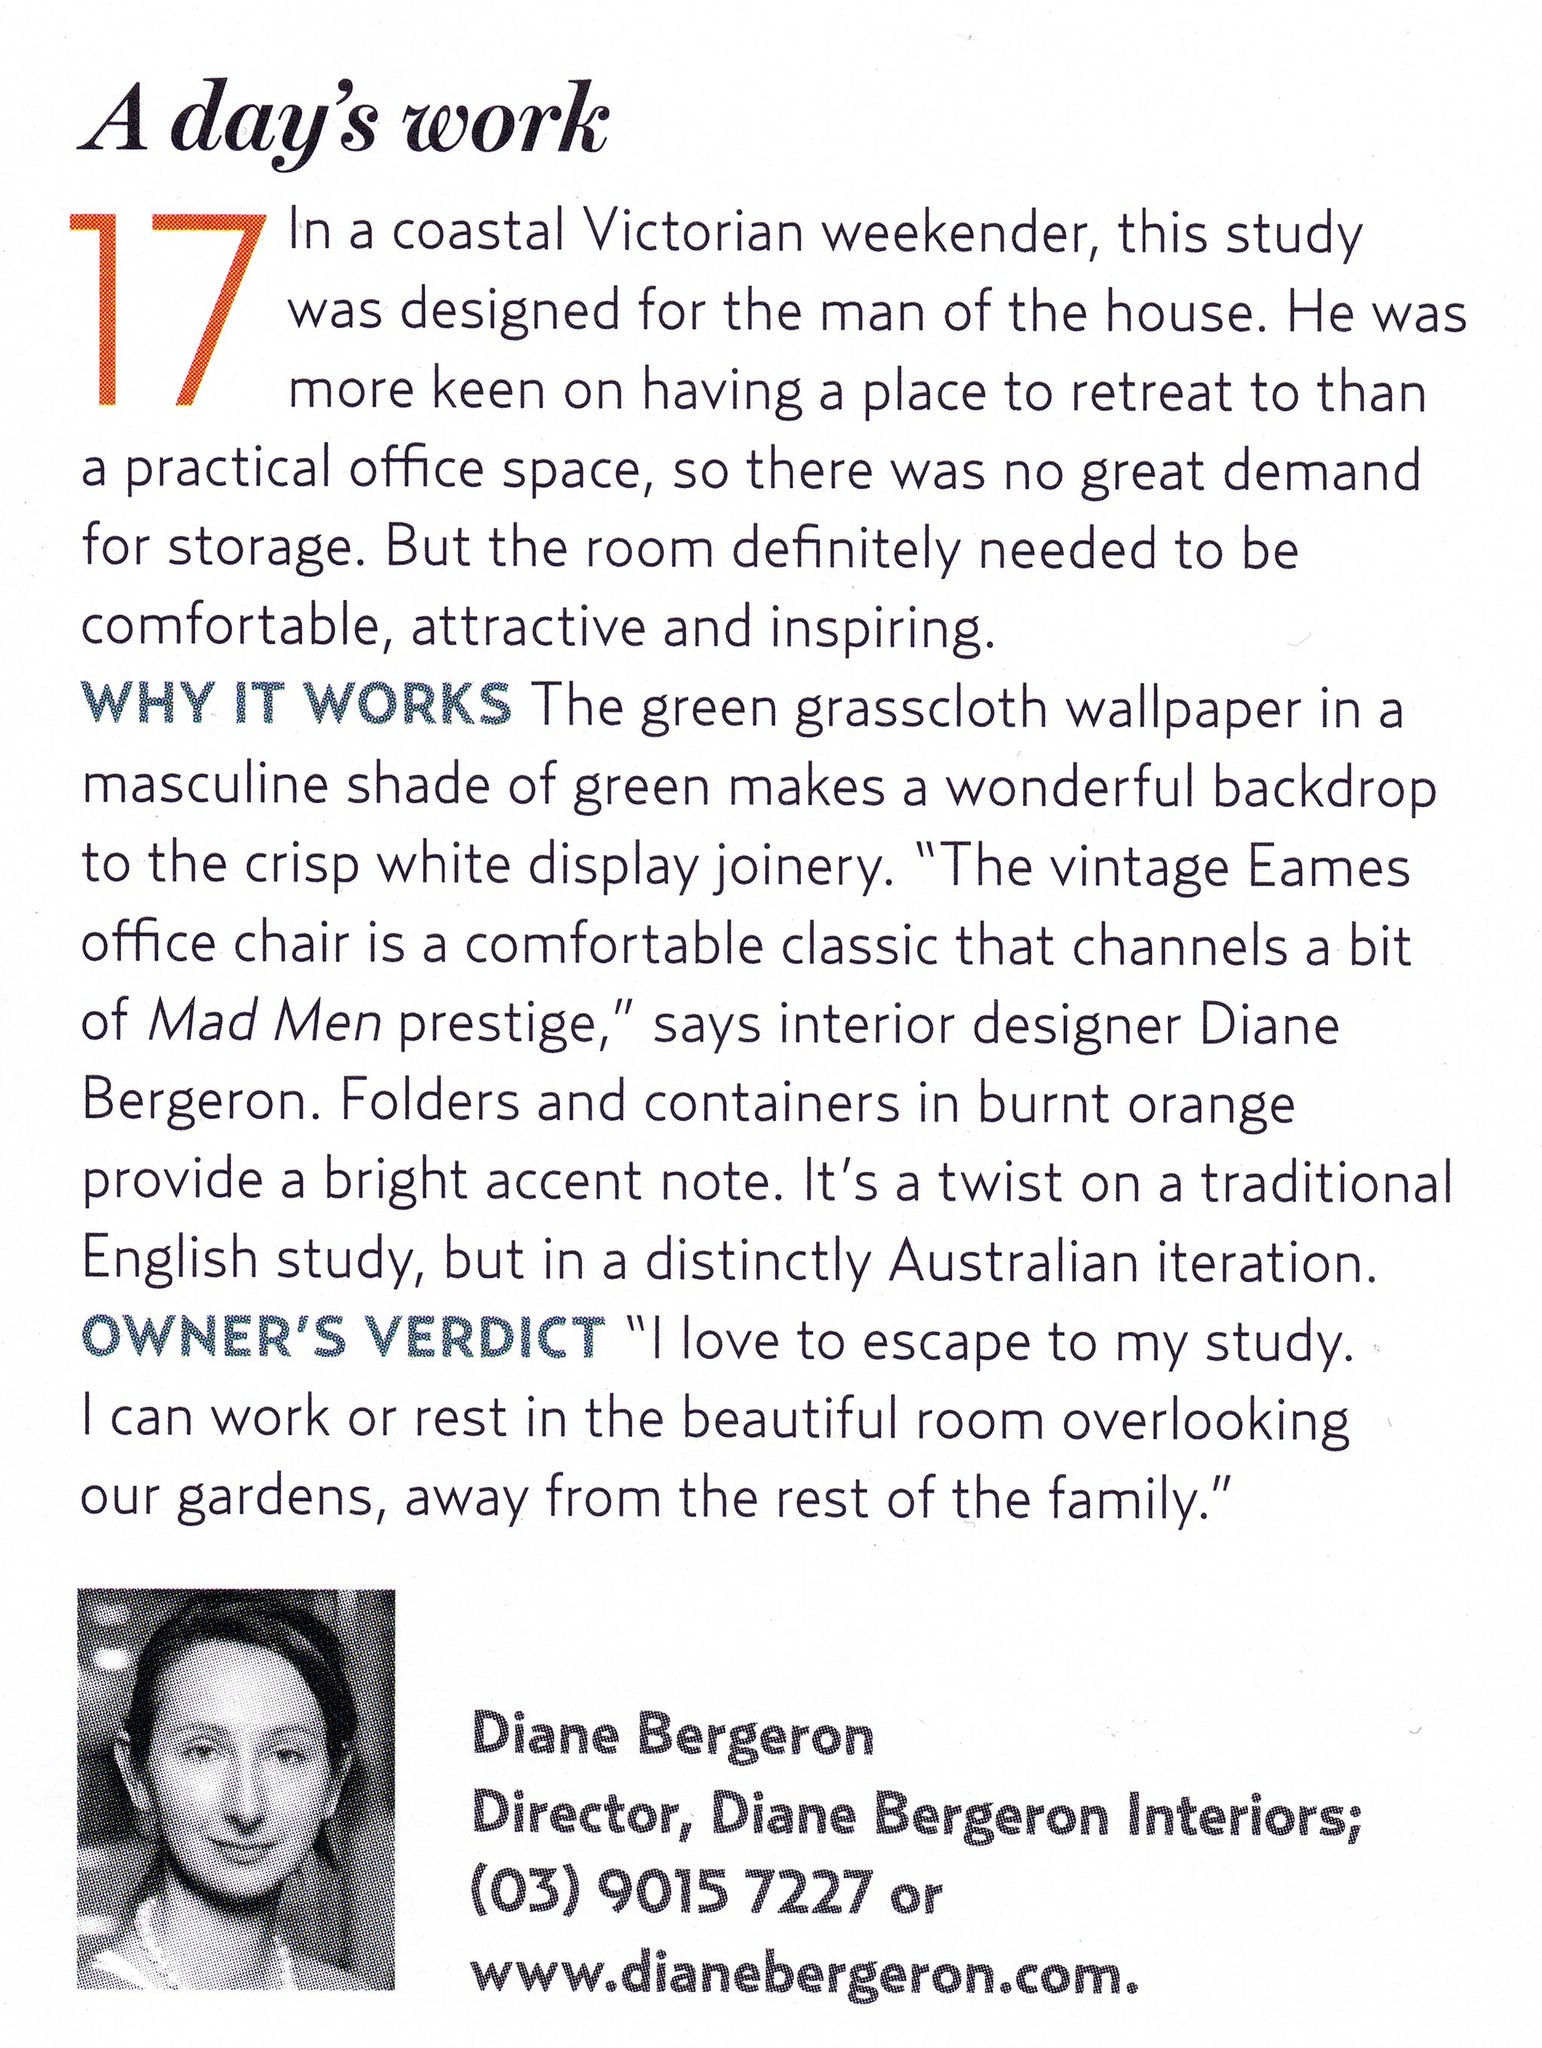 house-and-garden-Diane-Bergeron-design_Top-50-rooms-article_Balnarring-Beach